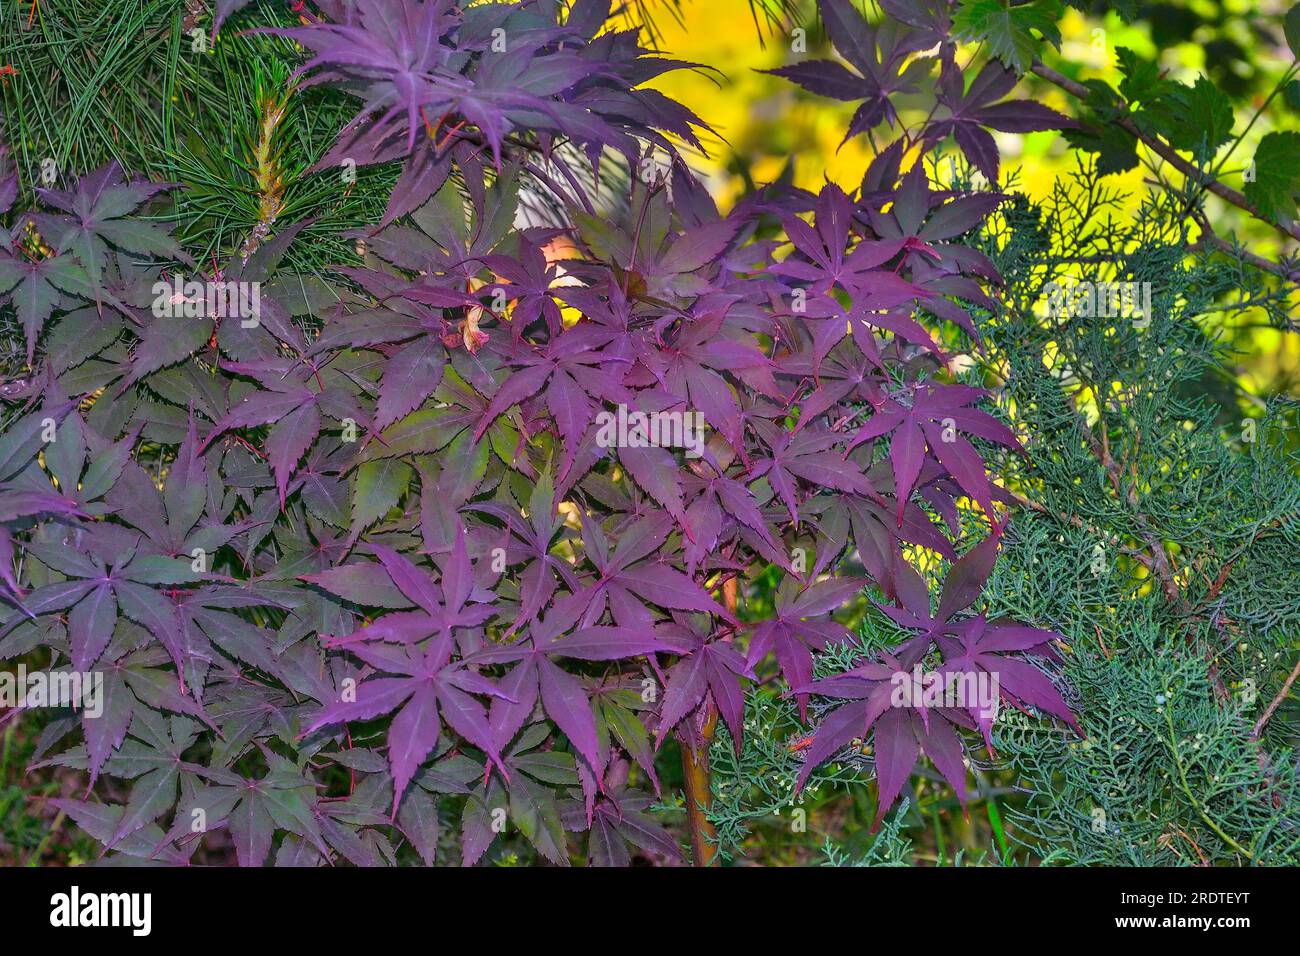 Japanischer Ahorn oder Acer Palmatum, oder fächerförmiger marmor, Varieté Purple Ghost. Zierpflanze mit Blättern, die von grün bis helllila gefärbt sind. Habe ich benutzt Stockfoto